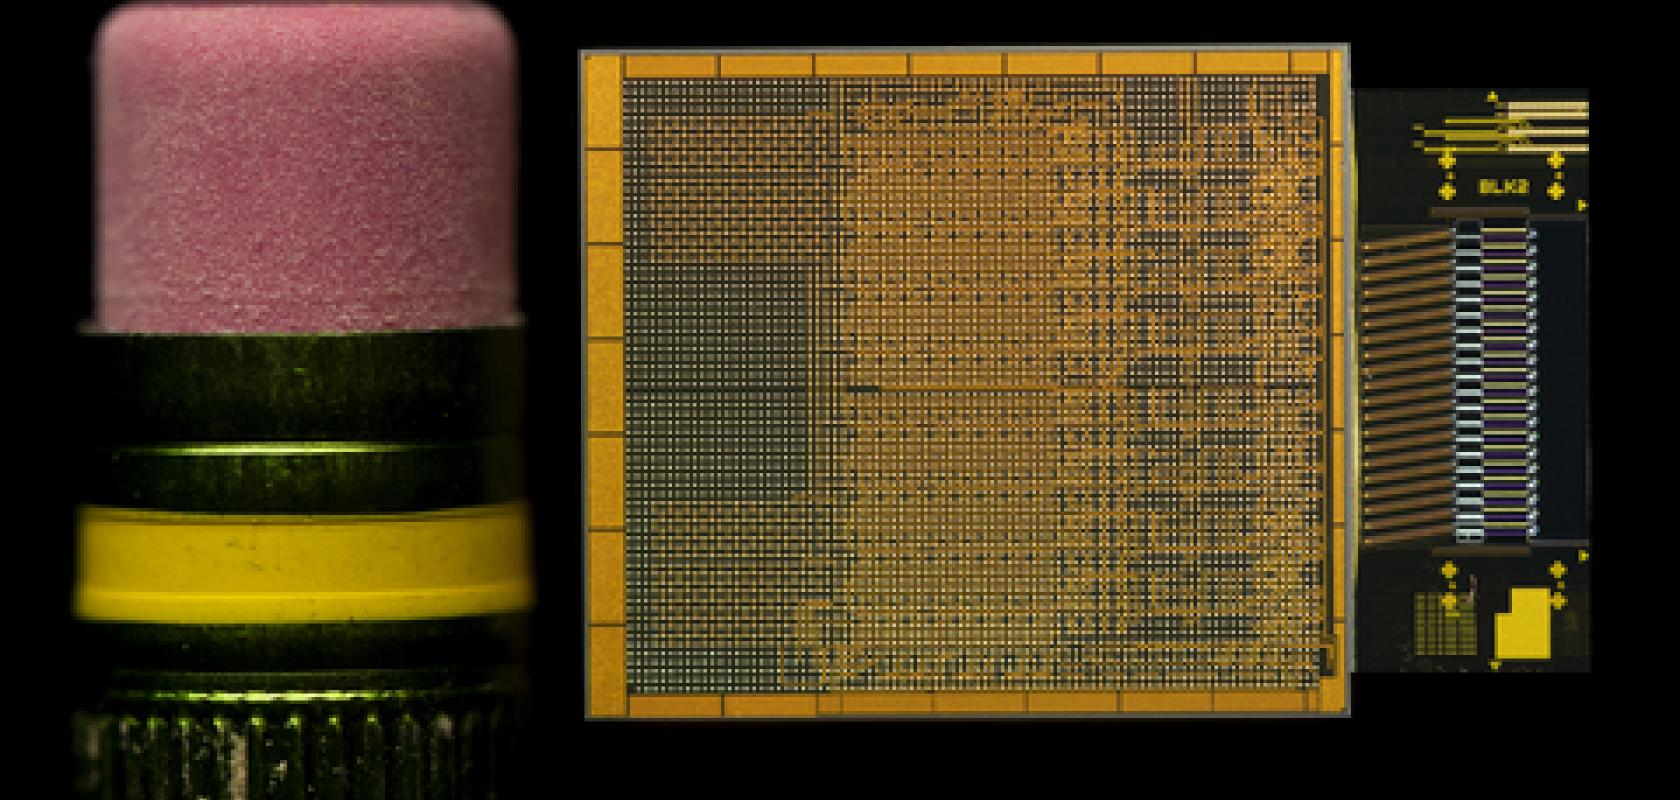 Intel OCI chiplet 